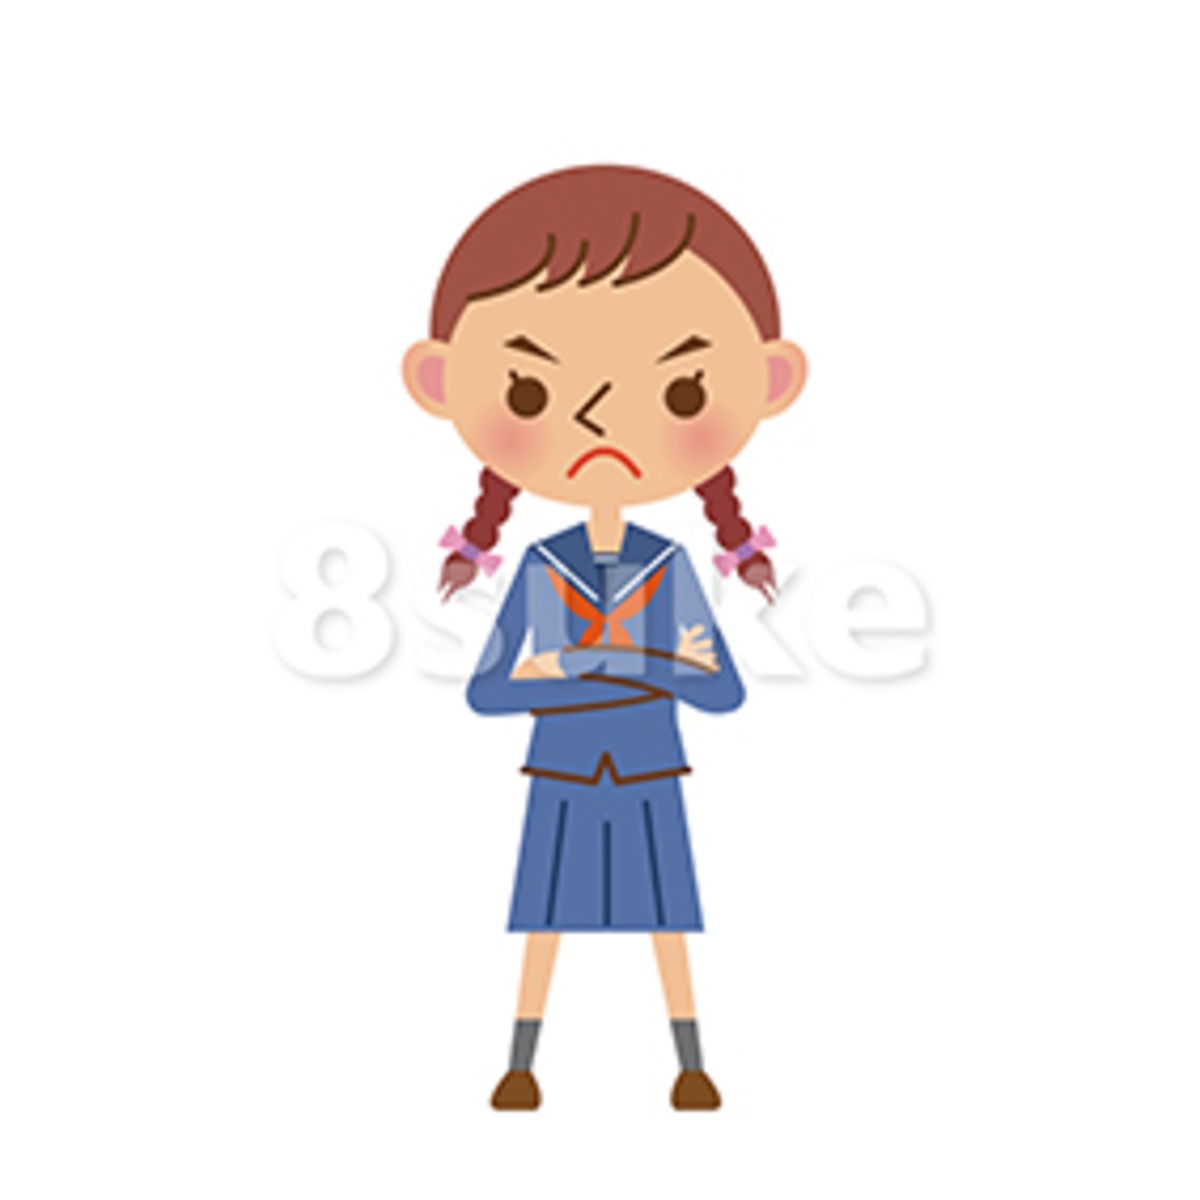 イラスト素材 腕組みをするセーラー服姿の女子中学生 高校生 ベクター Jpg 8sukeの人物イラスト屋 かわいいベクター素材のダウンロード販売